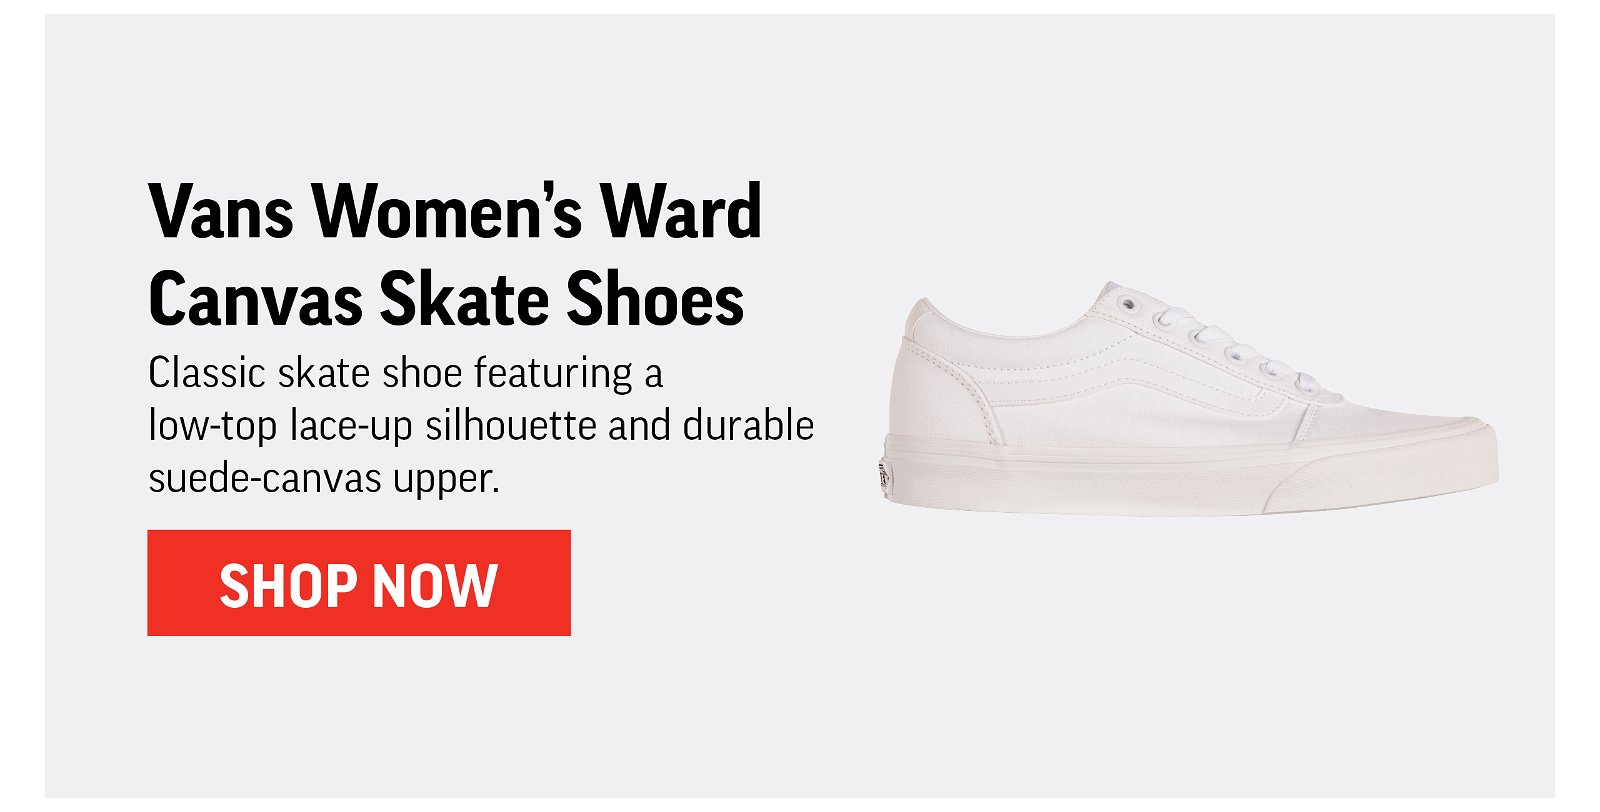 Vans Women's Ward Canvas Skate Shoes